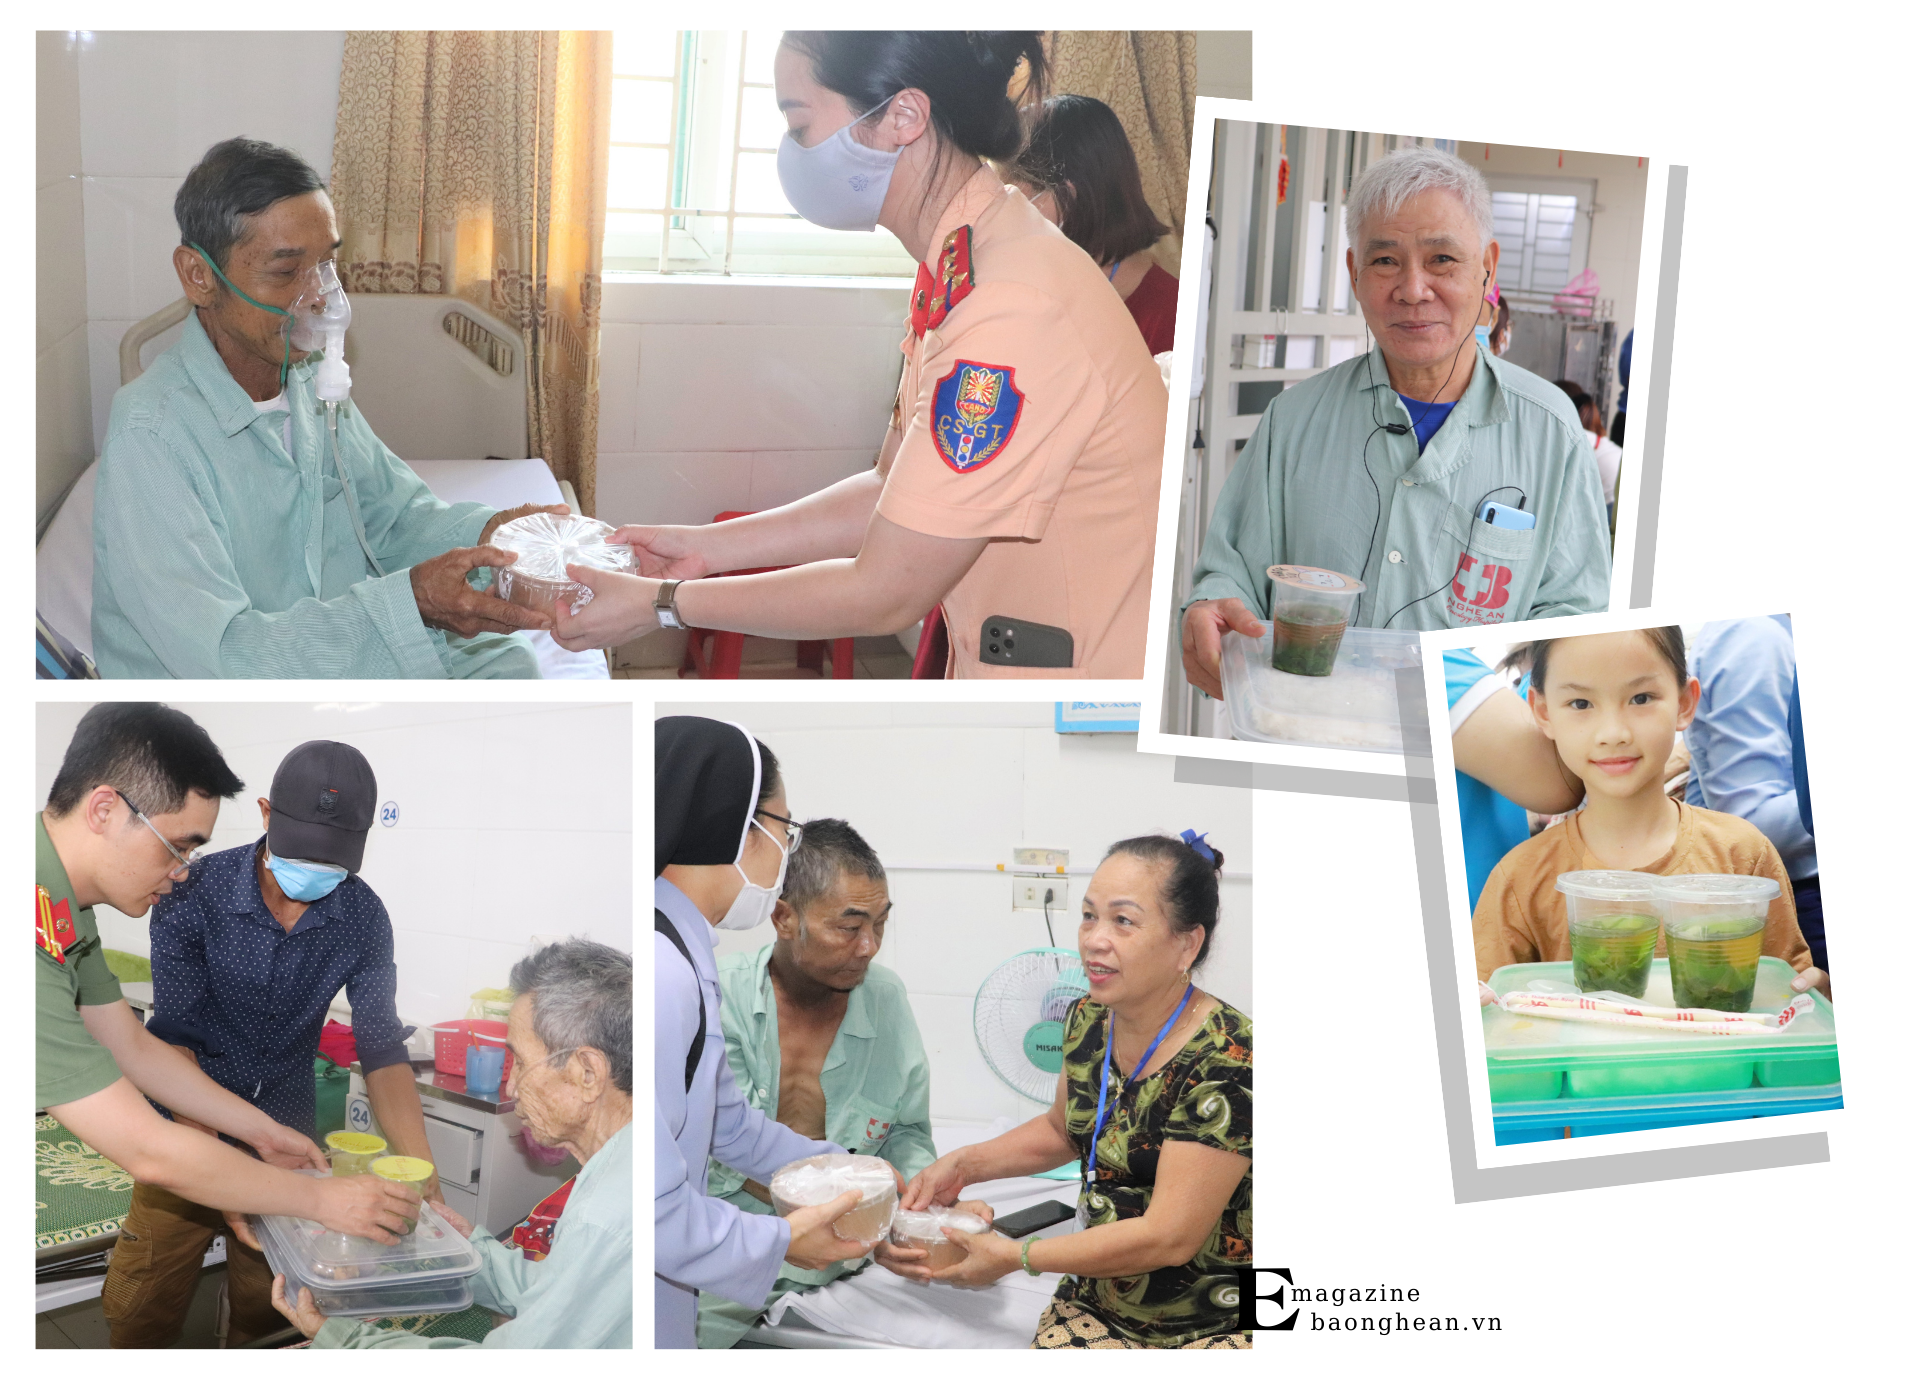 Bệnh viện Ung bướu Nghệ An kết nối được với nhiều cá nhân, tập thể để hỗ trợ các suất cơm miễn phí cho bệnh nhân.